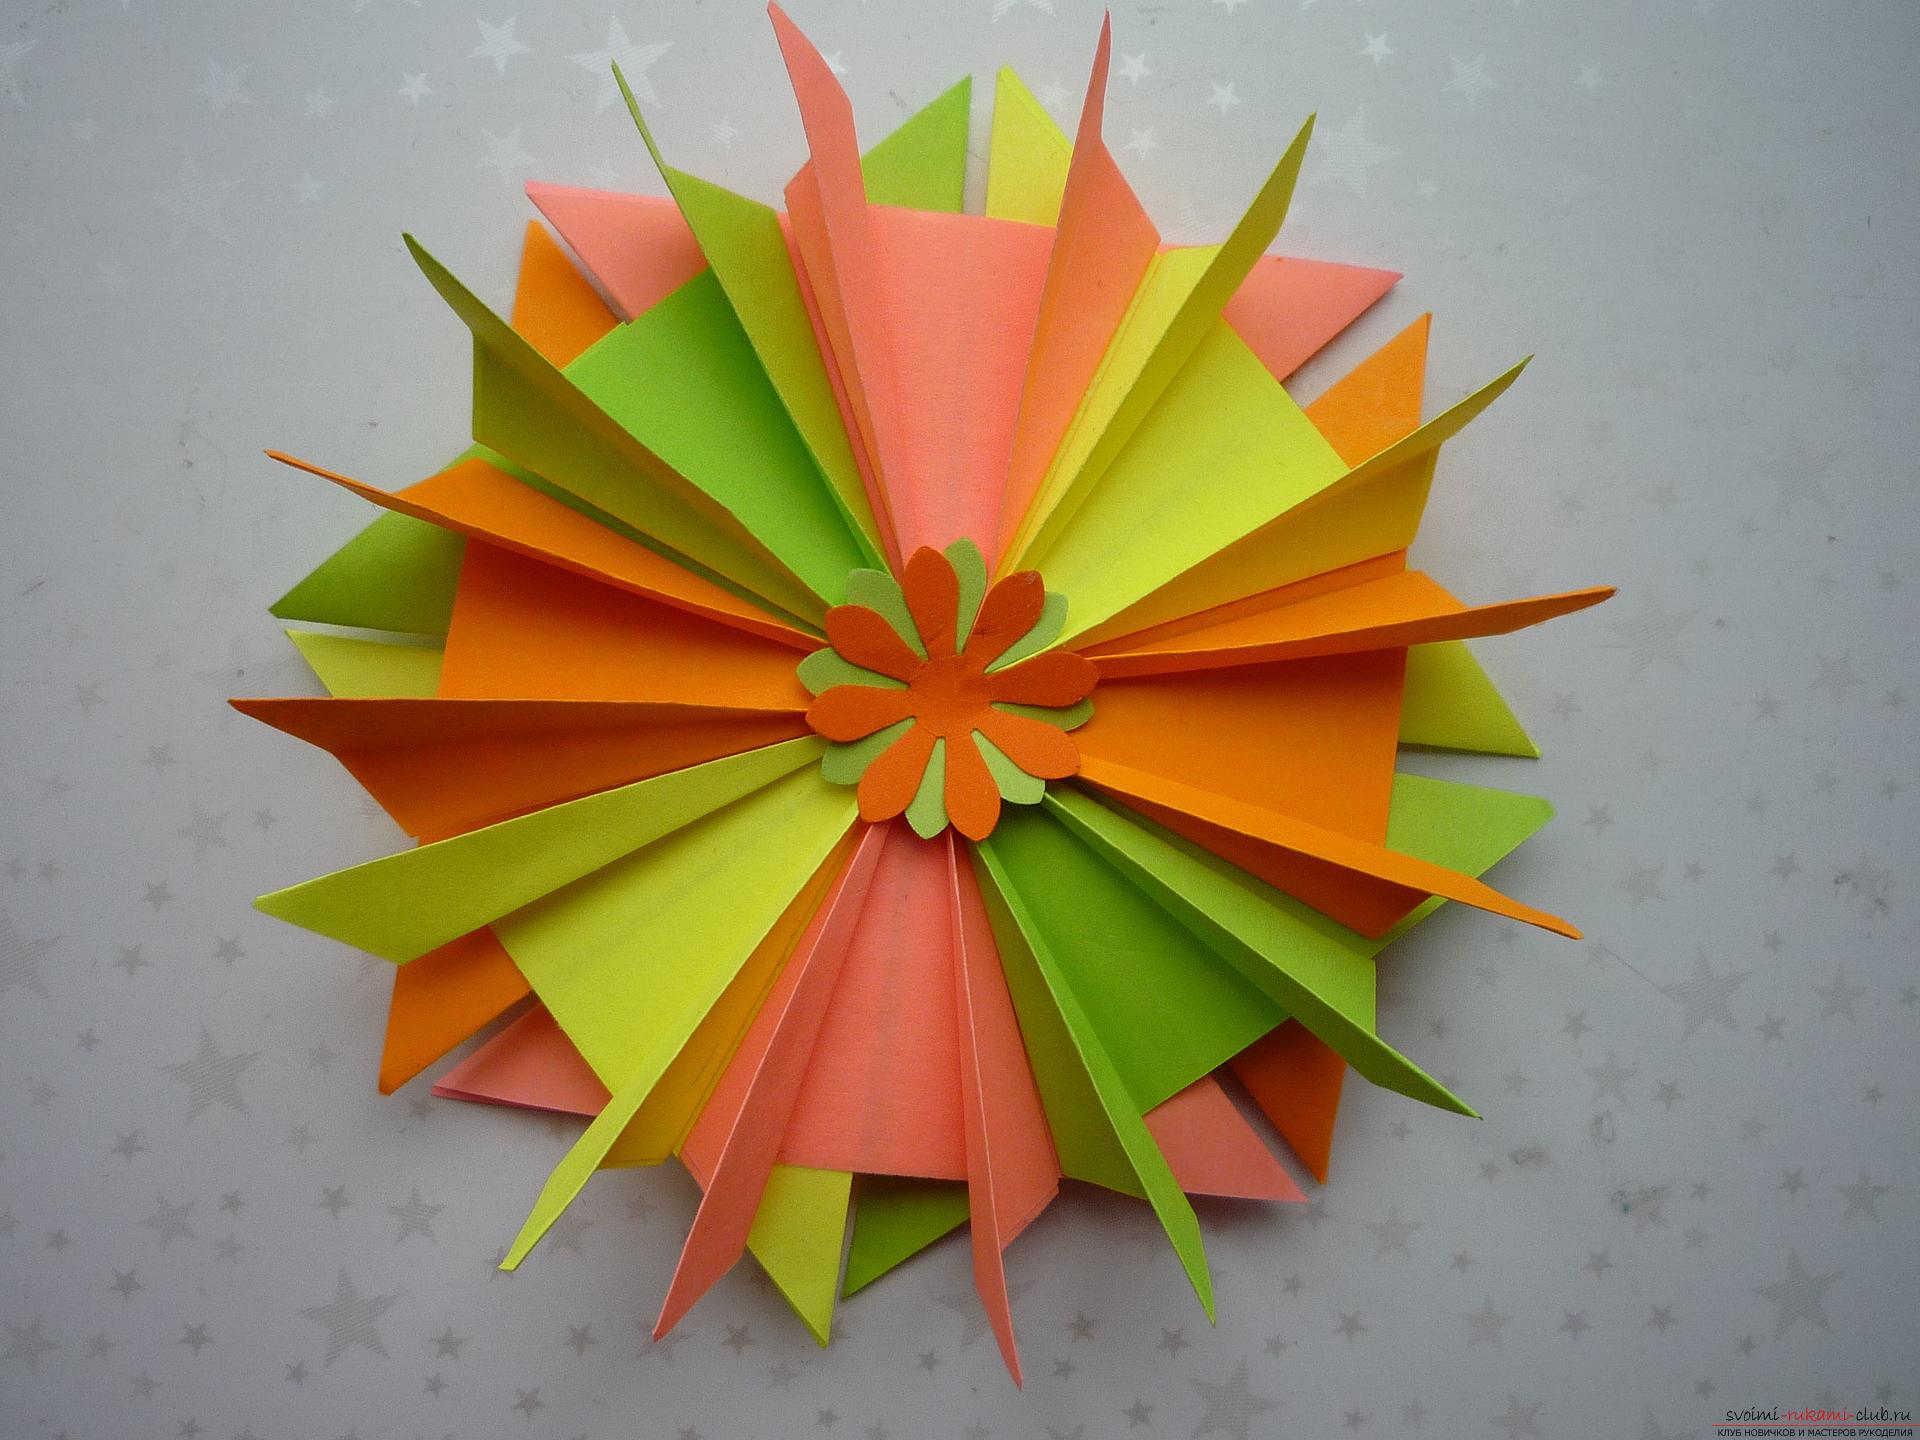 Мастер-класс расскажет как сделать модульную звезду оригами из бумаги своими руками. Фото №12